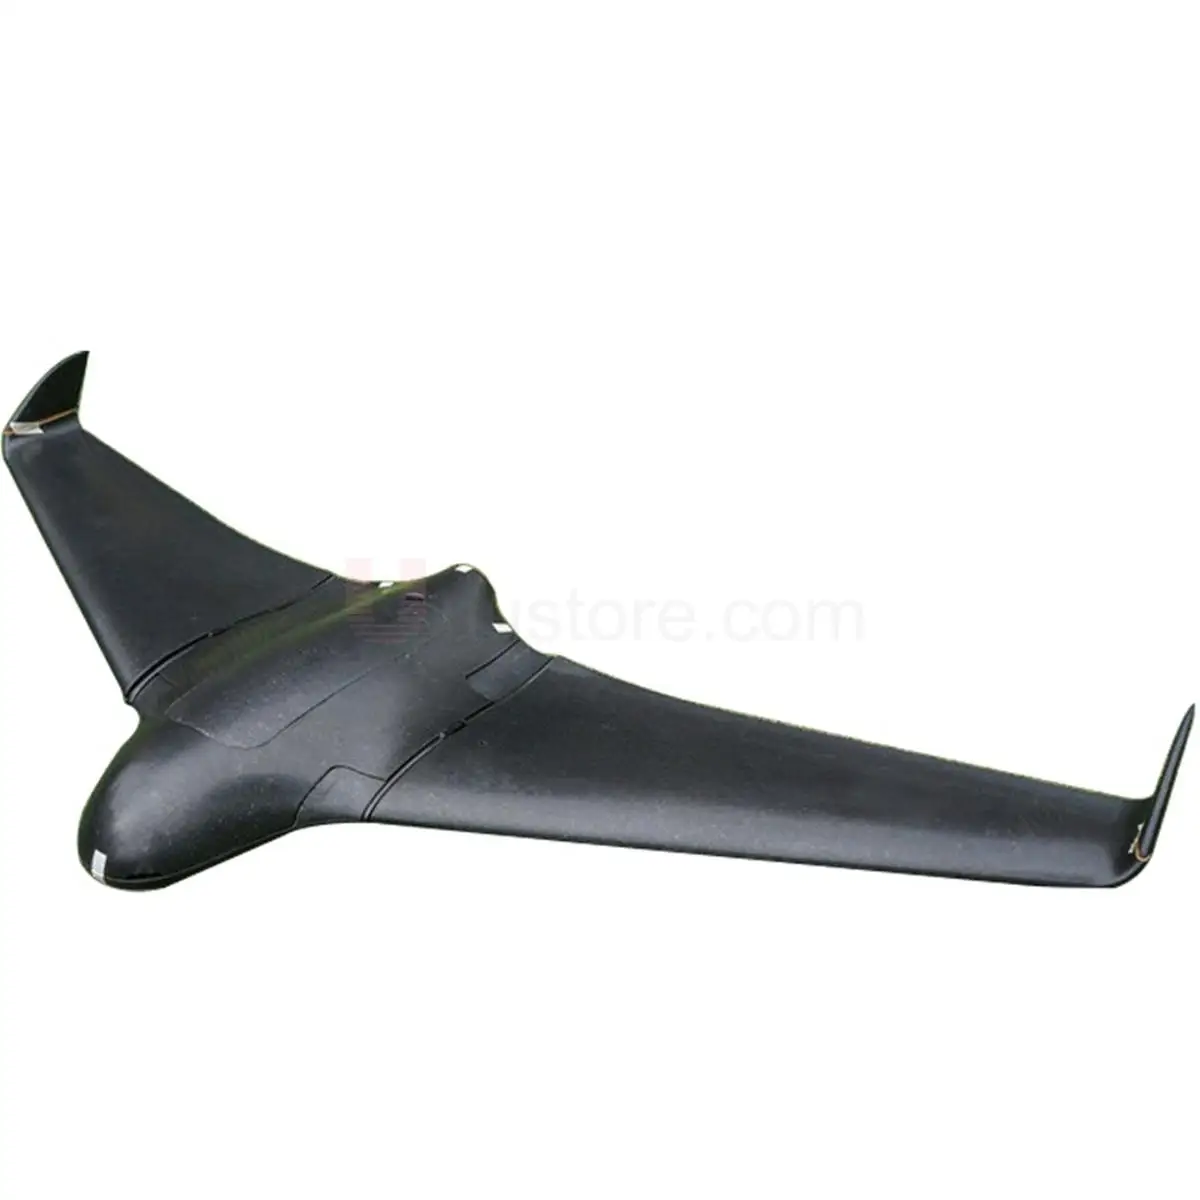 BIG-FPV-wing-SkyWalker-2120mm-X8-EPO-UAV-Flying-Wing-FPV-RC-Plane-KIT-Black-Remote.jpg